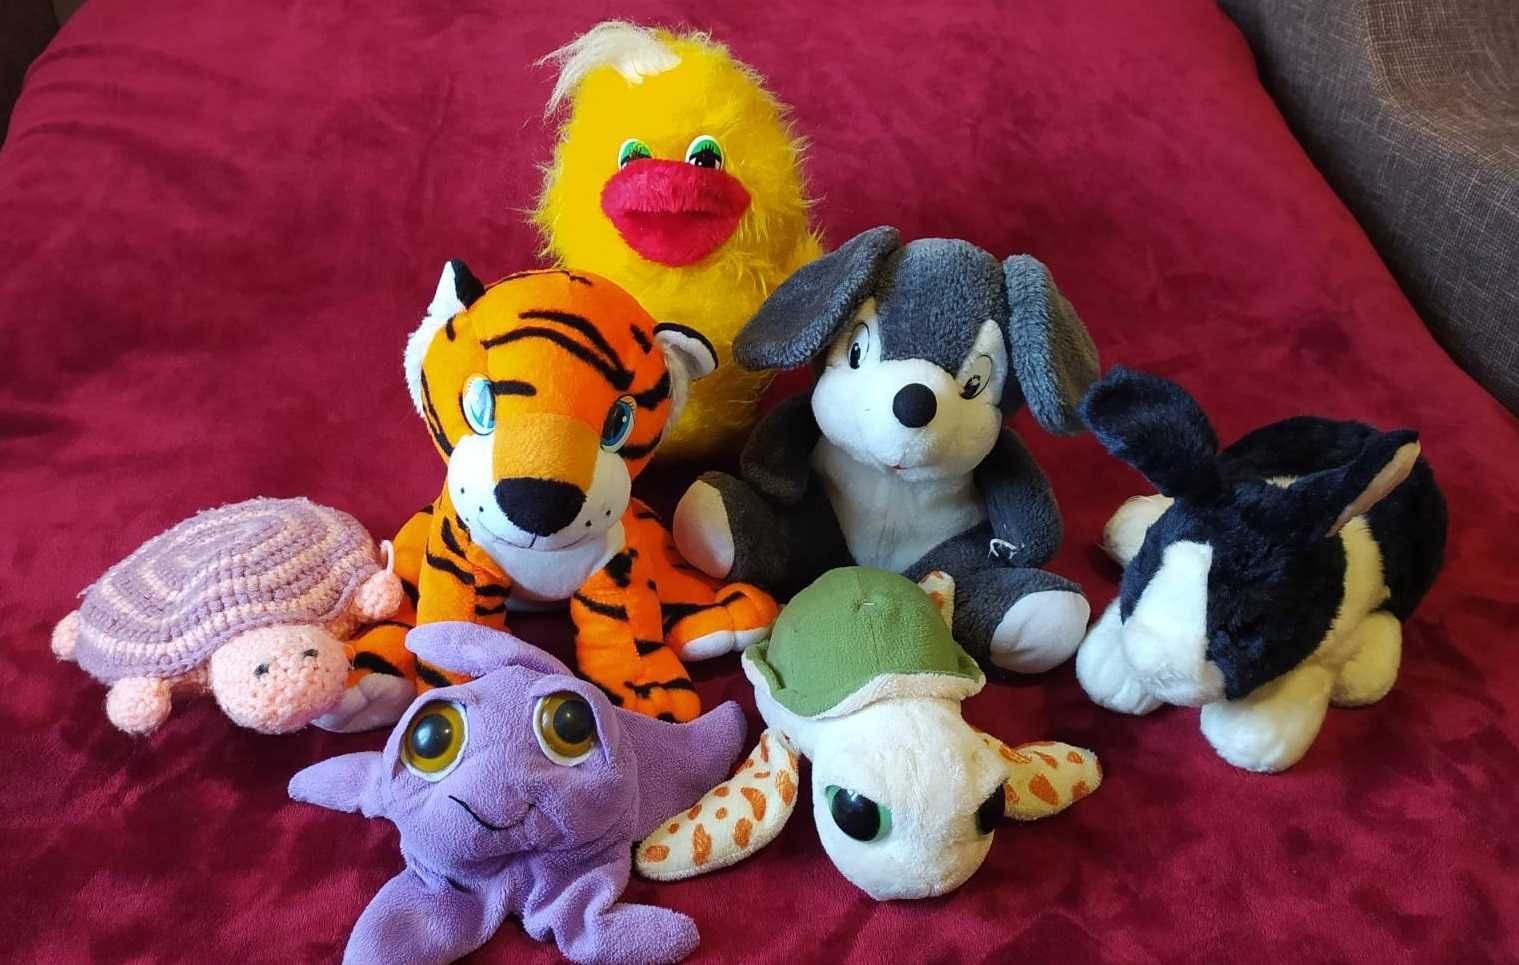 М'які іграшки
Качка, зайчик, мишка, черепахи, тигр та морська зірка